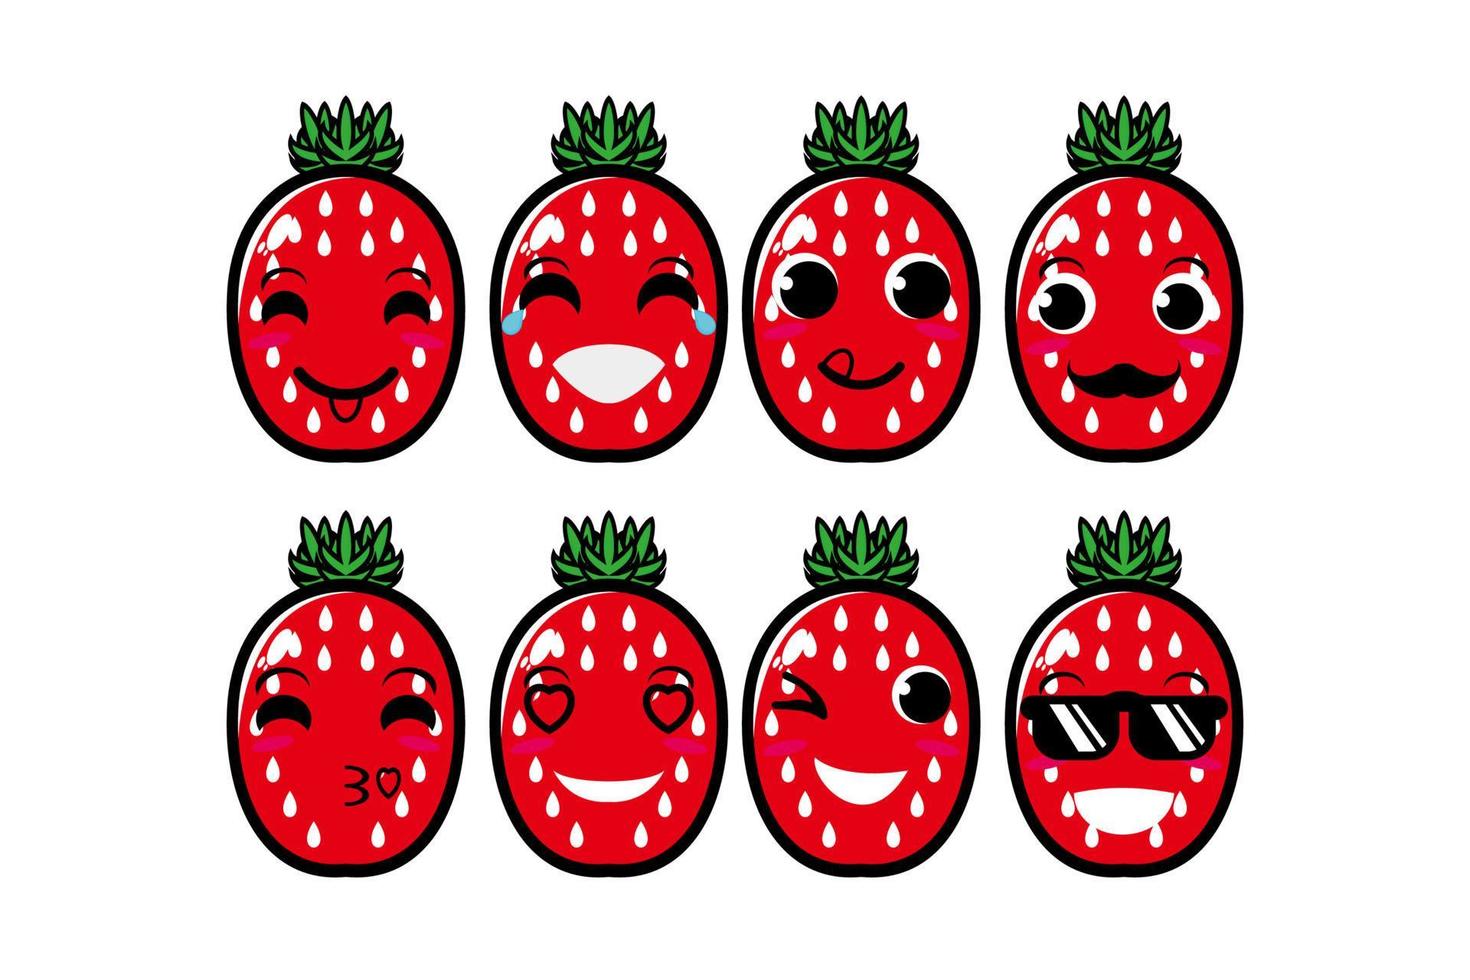 mignon souriant drôle fraise set collection.vector dessin animé plat visage personnage mascotte illustration .isolé sur fond blanc vecteur